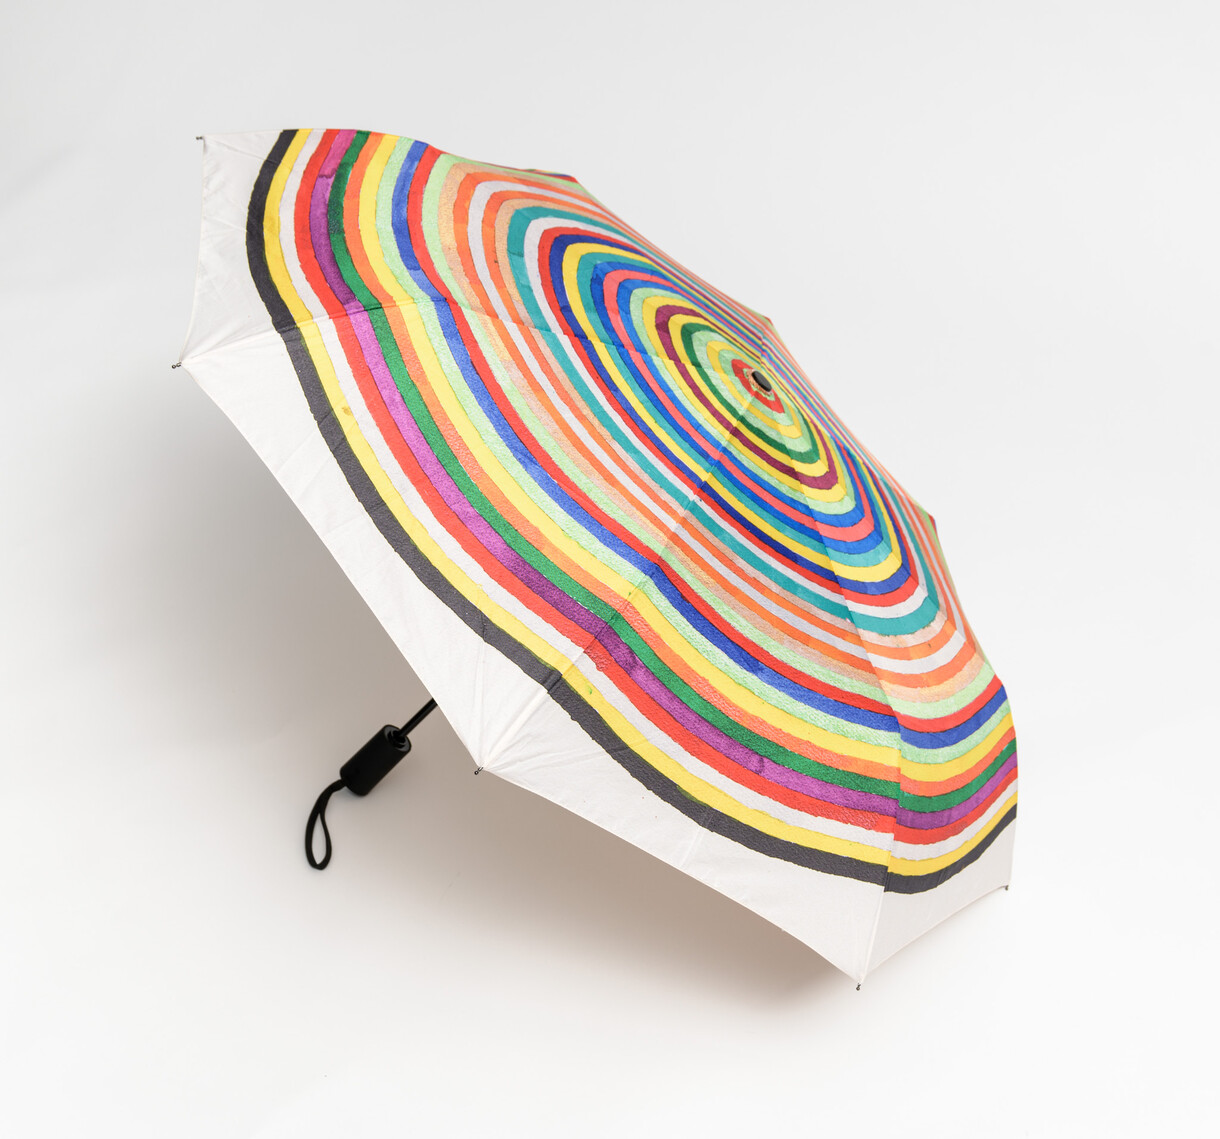 The Multicolored Garment - Umbrella